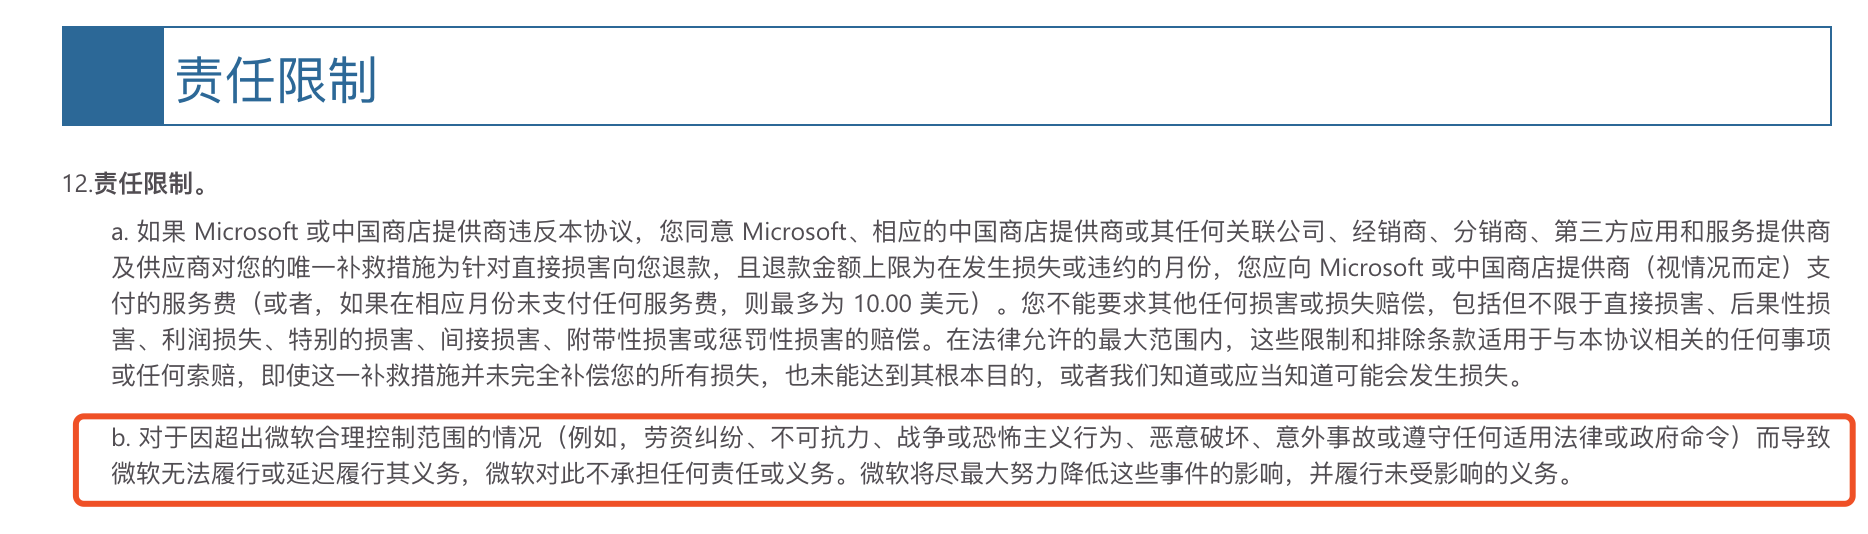 该条款在2019年7月1日发布的《Microsoft服务协议》中就已经存在。